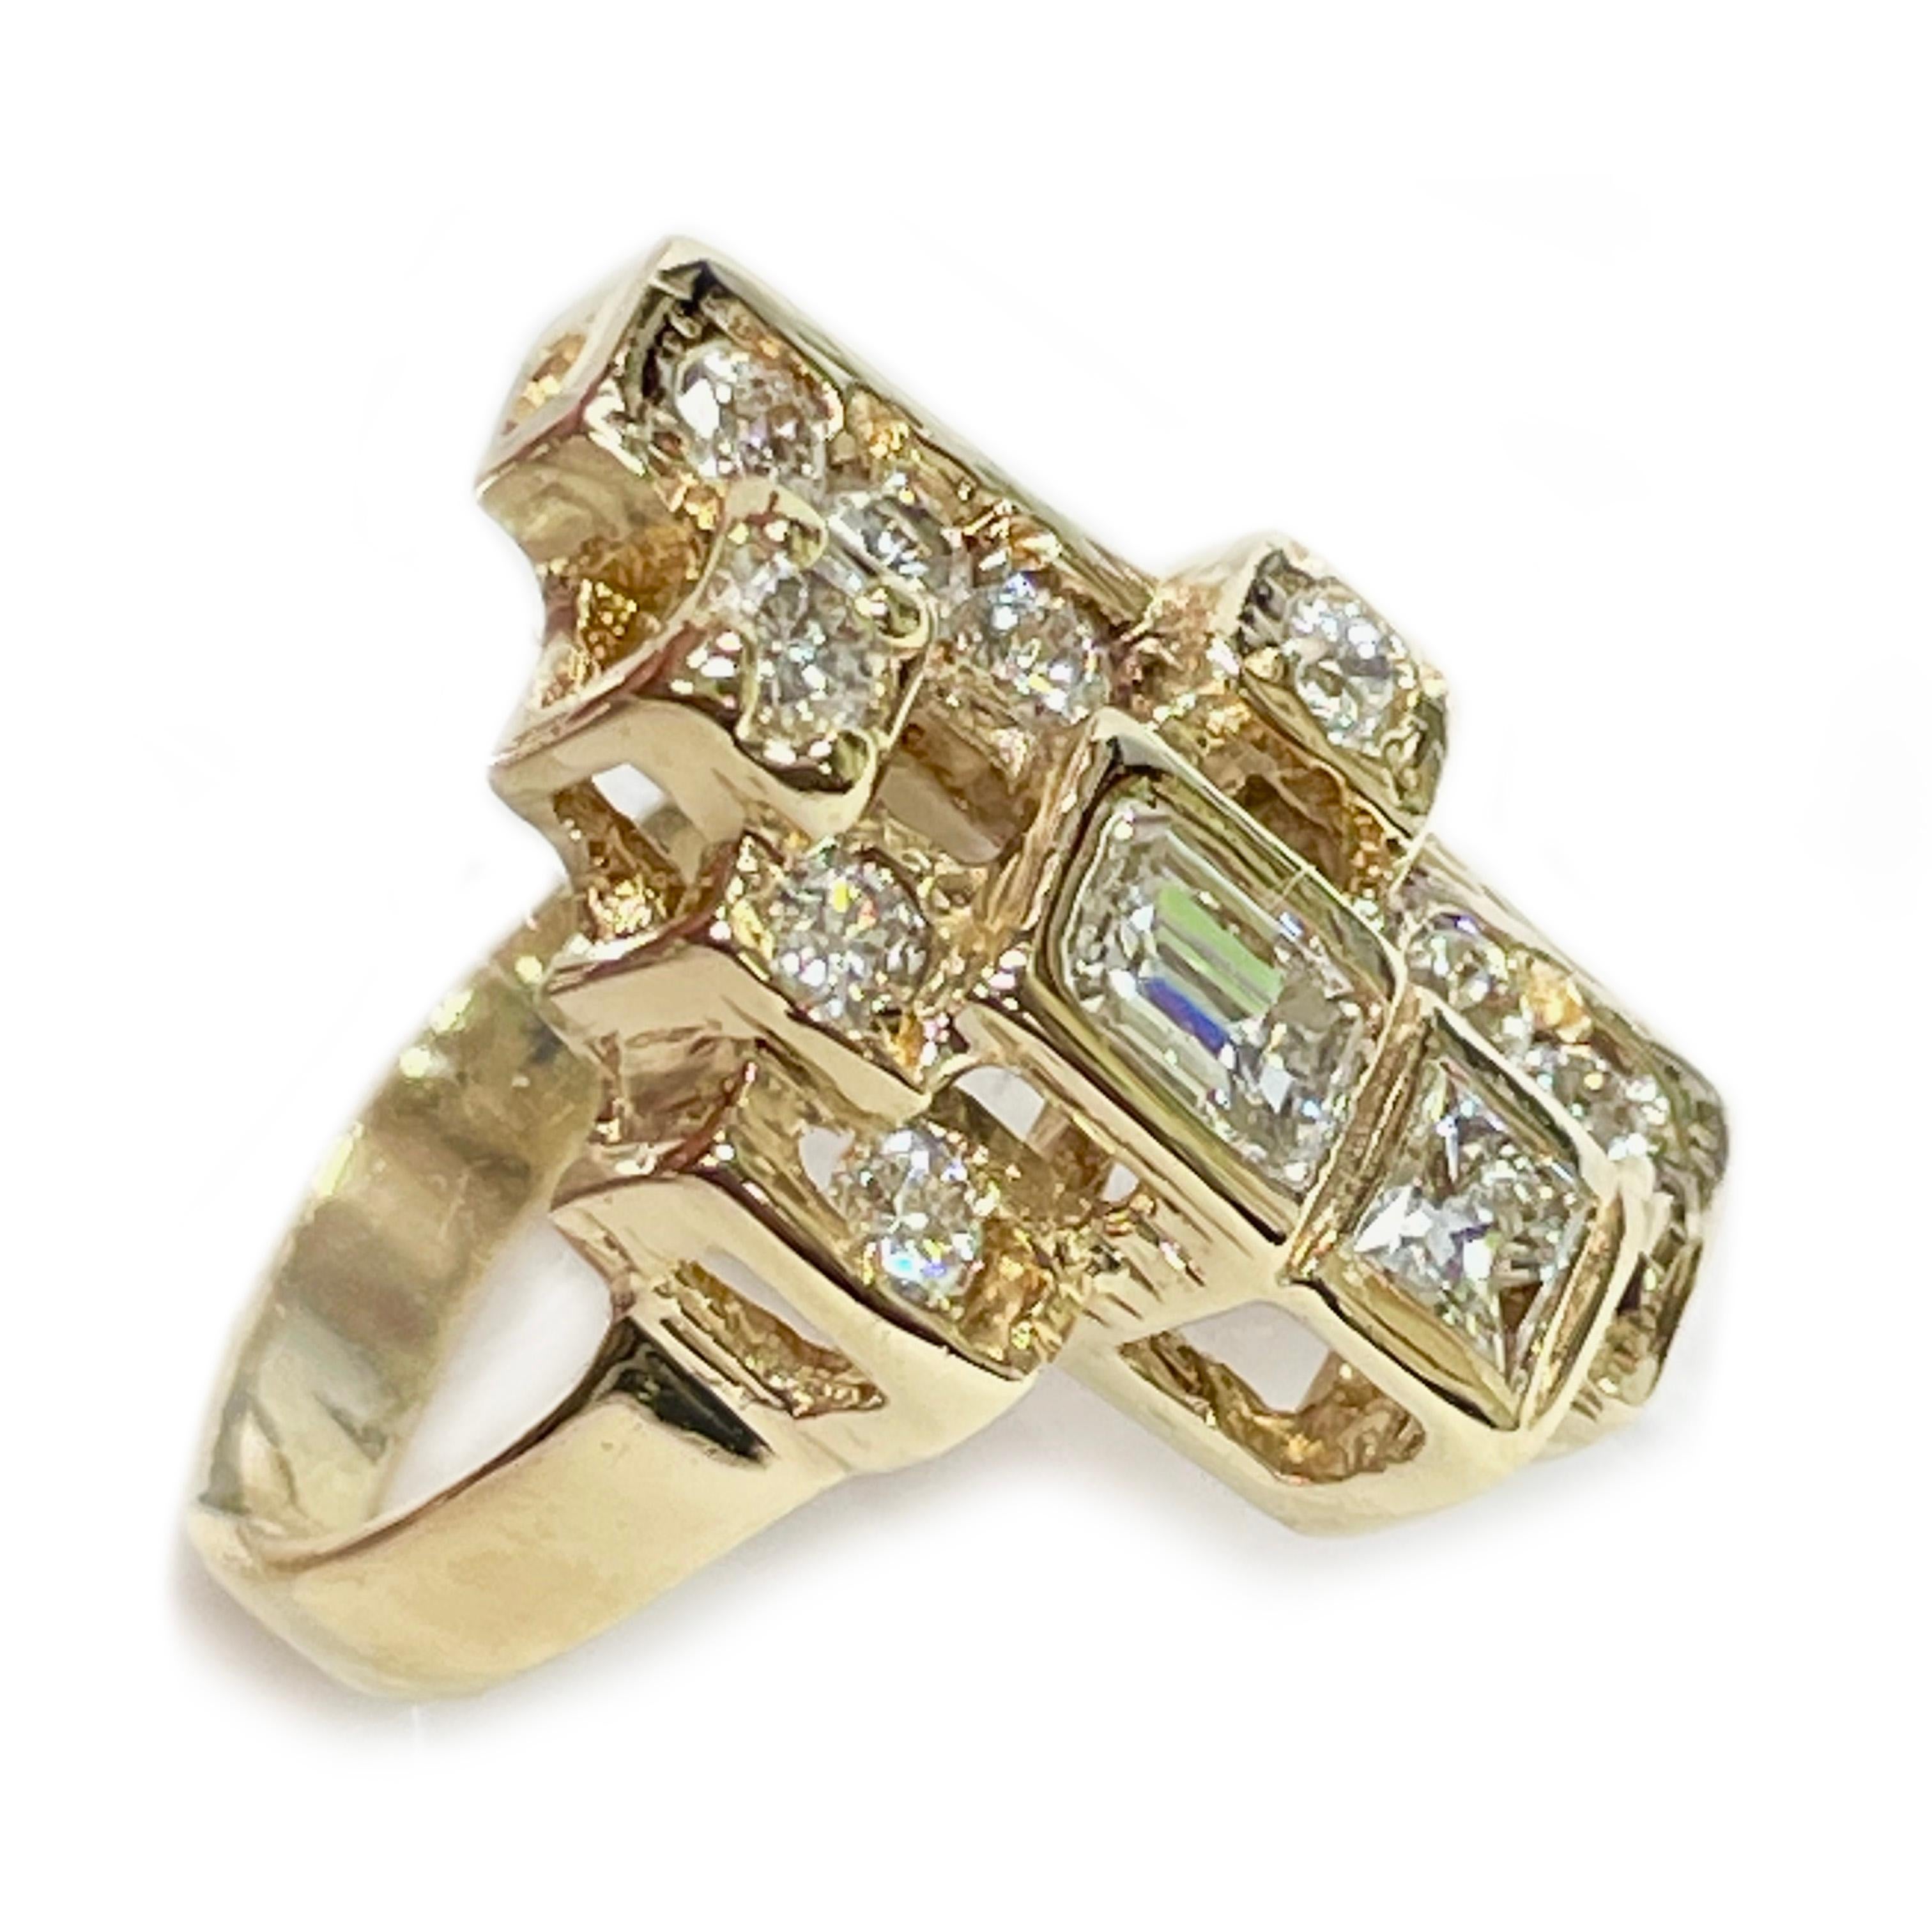 14 Karat Gelbgold Mehrere Schliffe Diamantring. Der Ring weist geometrische Lünettenfelder aus Gold mit Diamanten im Stufen-, Smaragd-, Quadrat- und Rundschliff auf. Die Diamanten sind sowohl in der Lünette als auch in der Zange gefasst. Es gibt